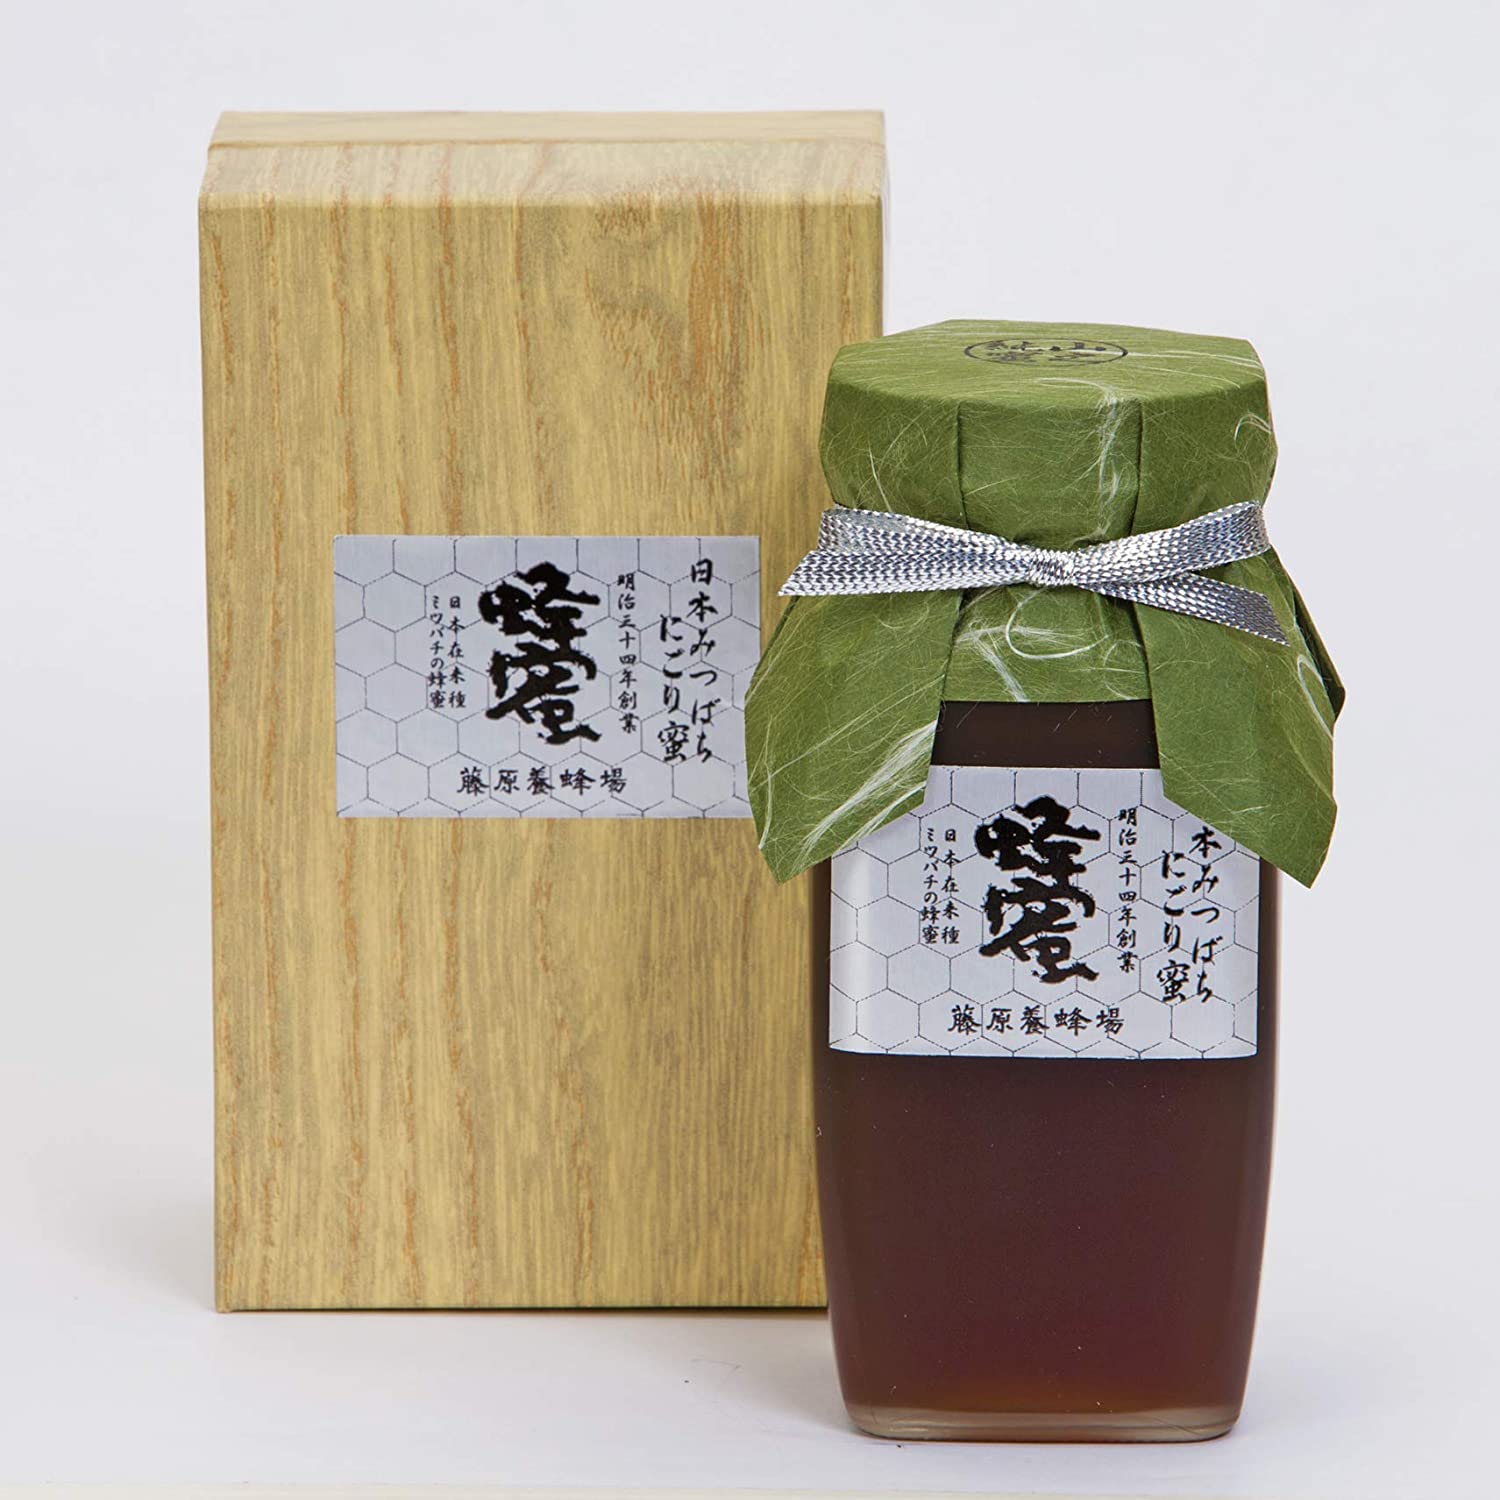 2020A/W新作送料無料 蜂蜜 専門店 藤原養蜂場 国産はちみつ 日本在来種みつばちの蜂蜜 にごり蜜 550g ガラス瓶 大人気